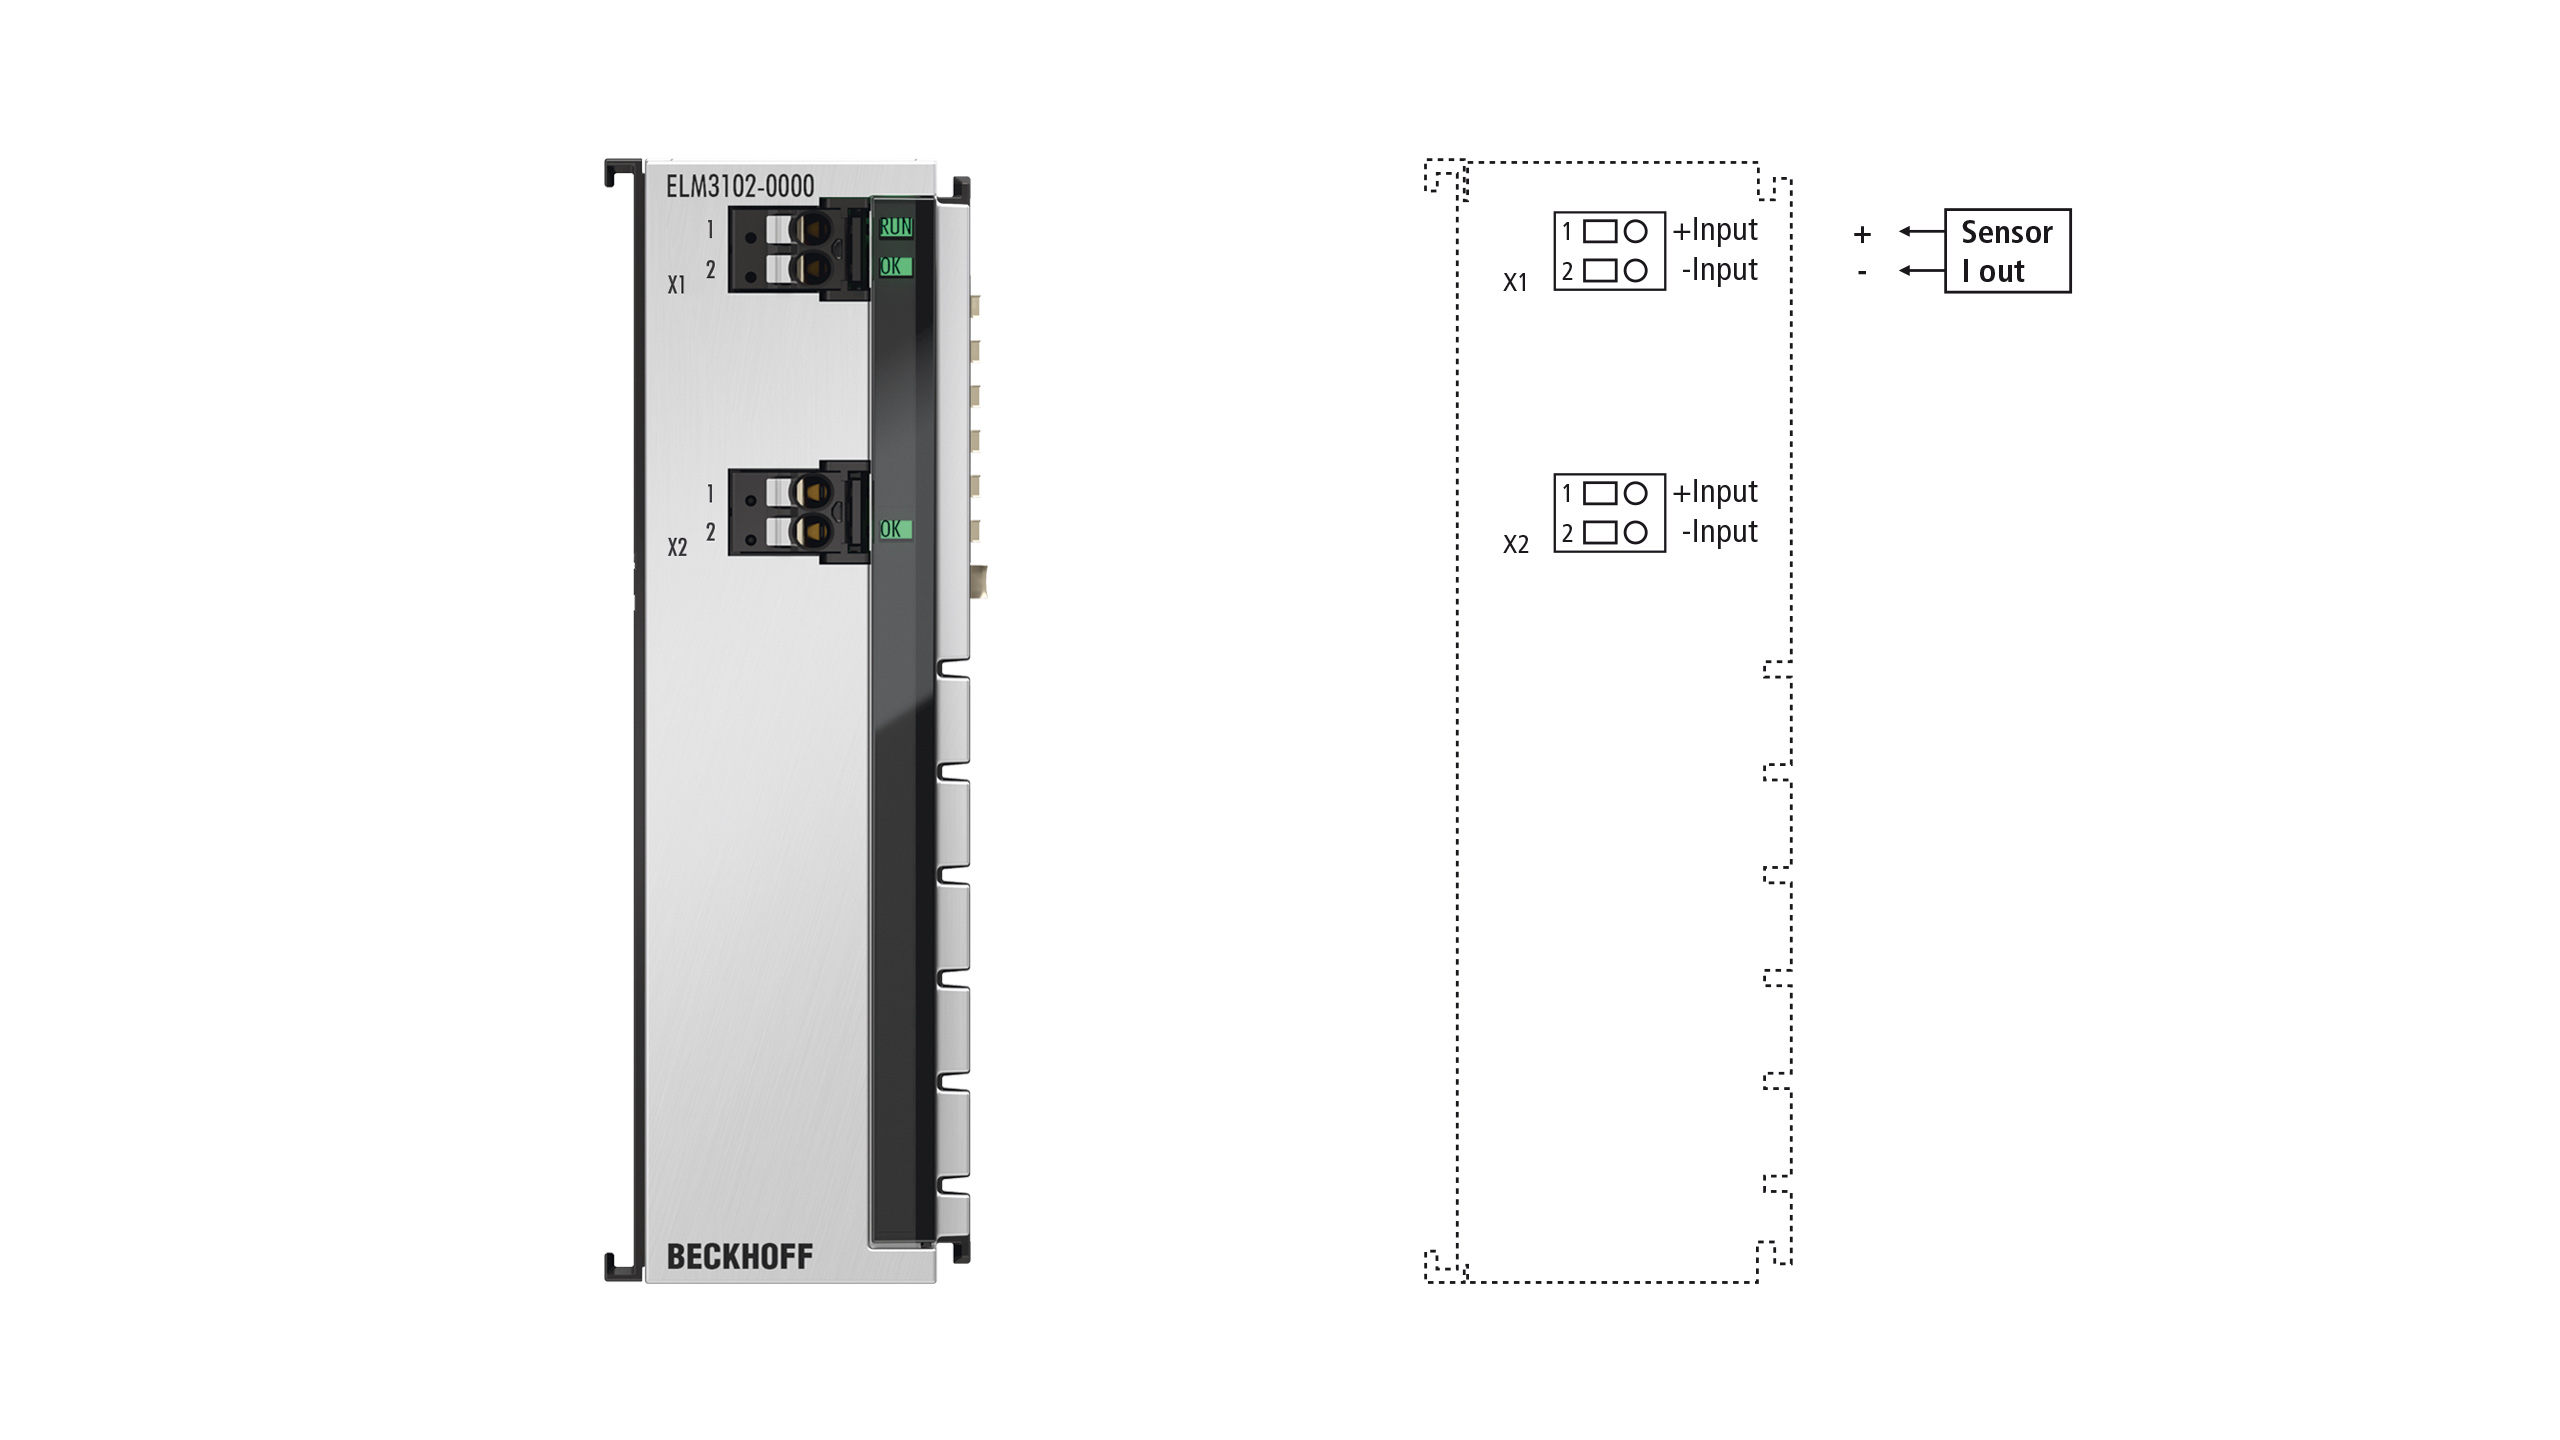 ELM3102-0000 | EtherCAT-Klemme, 2-Kanal-Analog-Eingang, Strom, ±20 mA, 24 Bit, 20 kSps